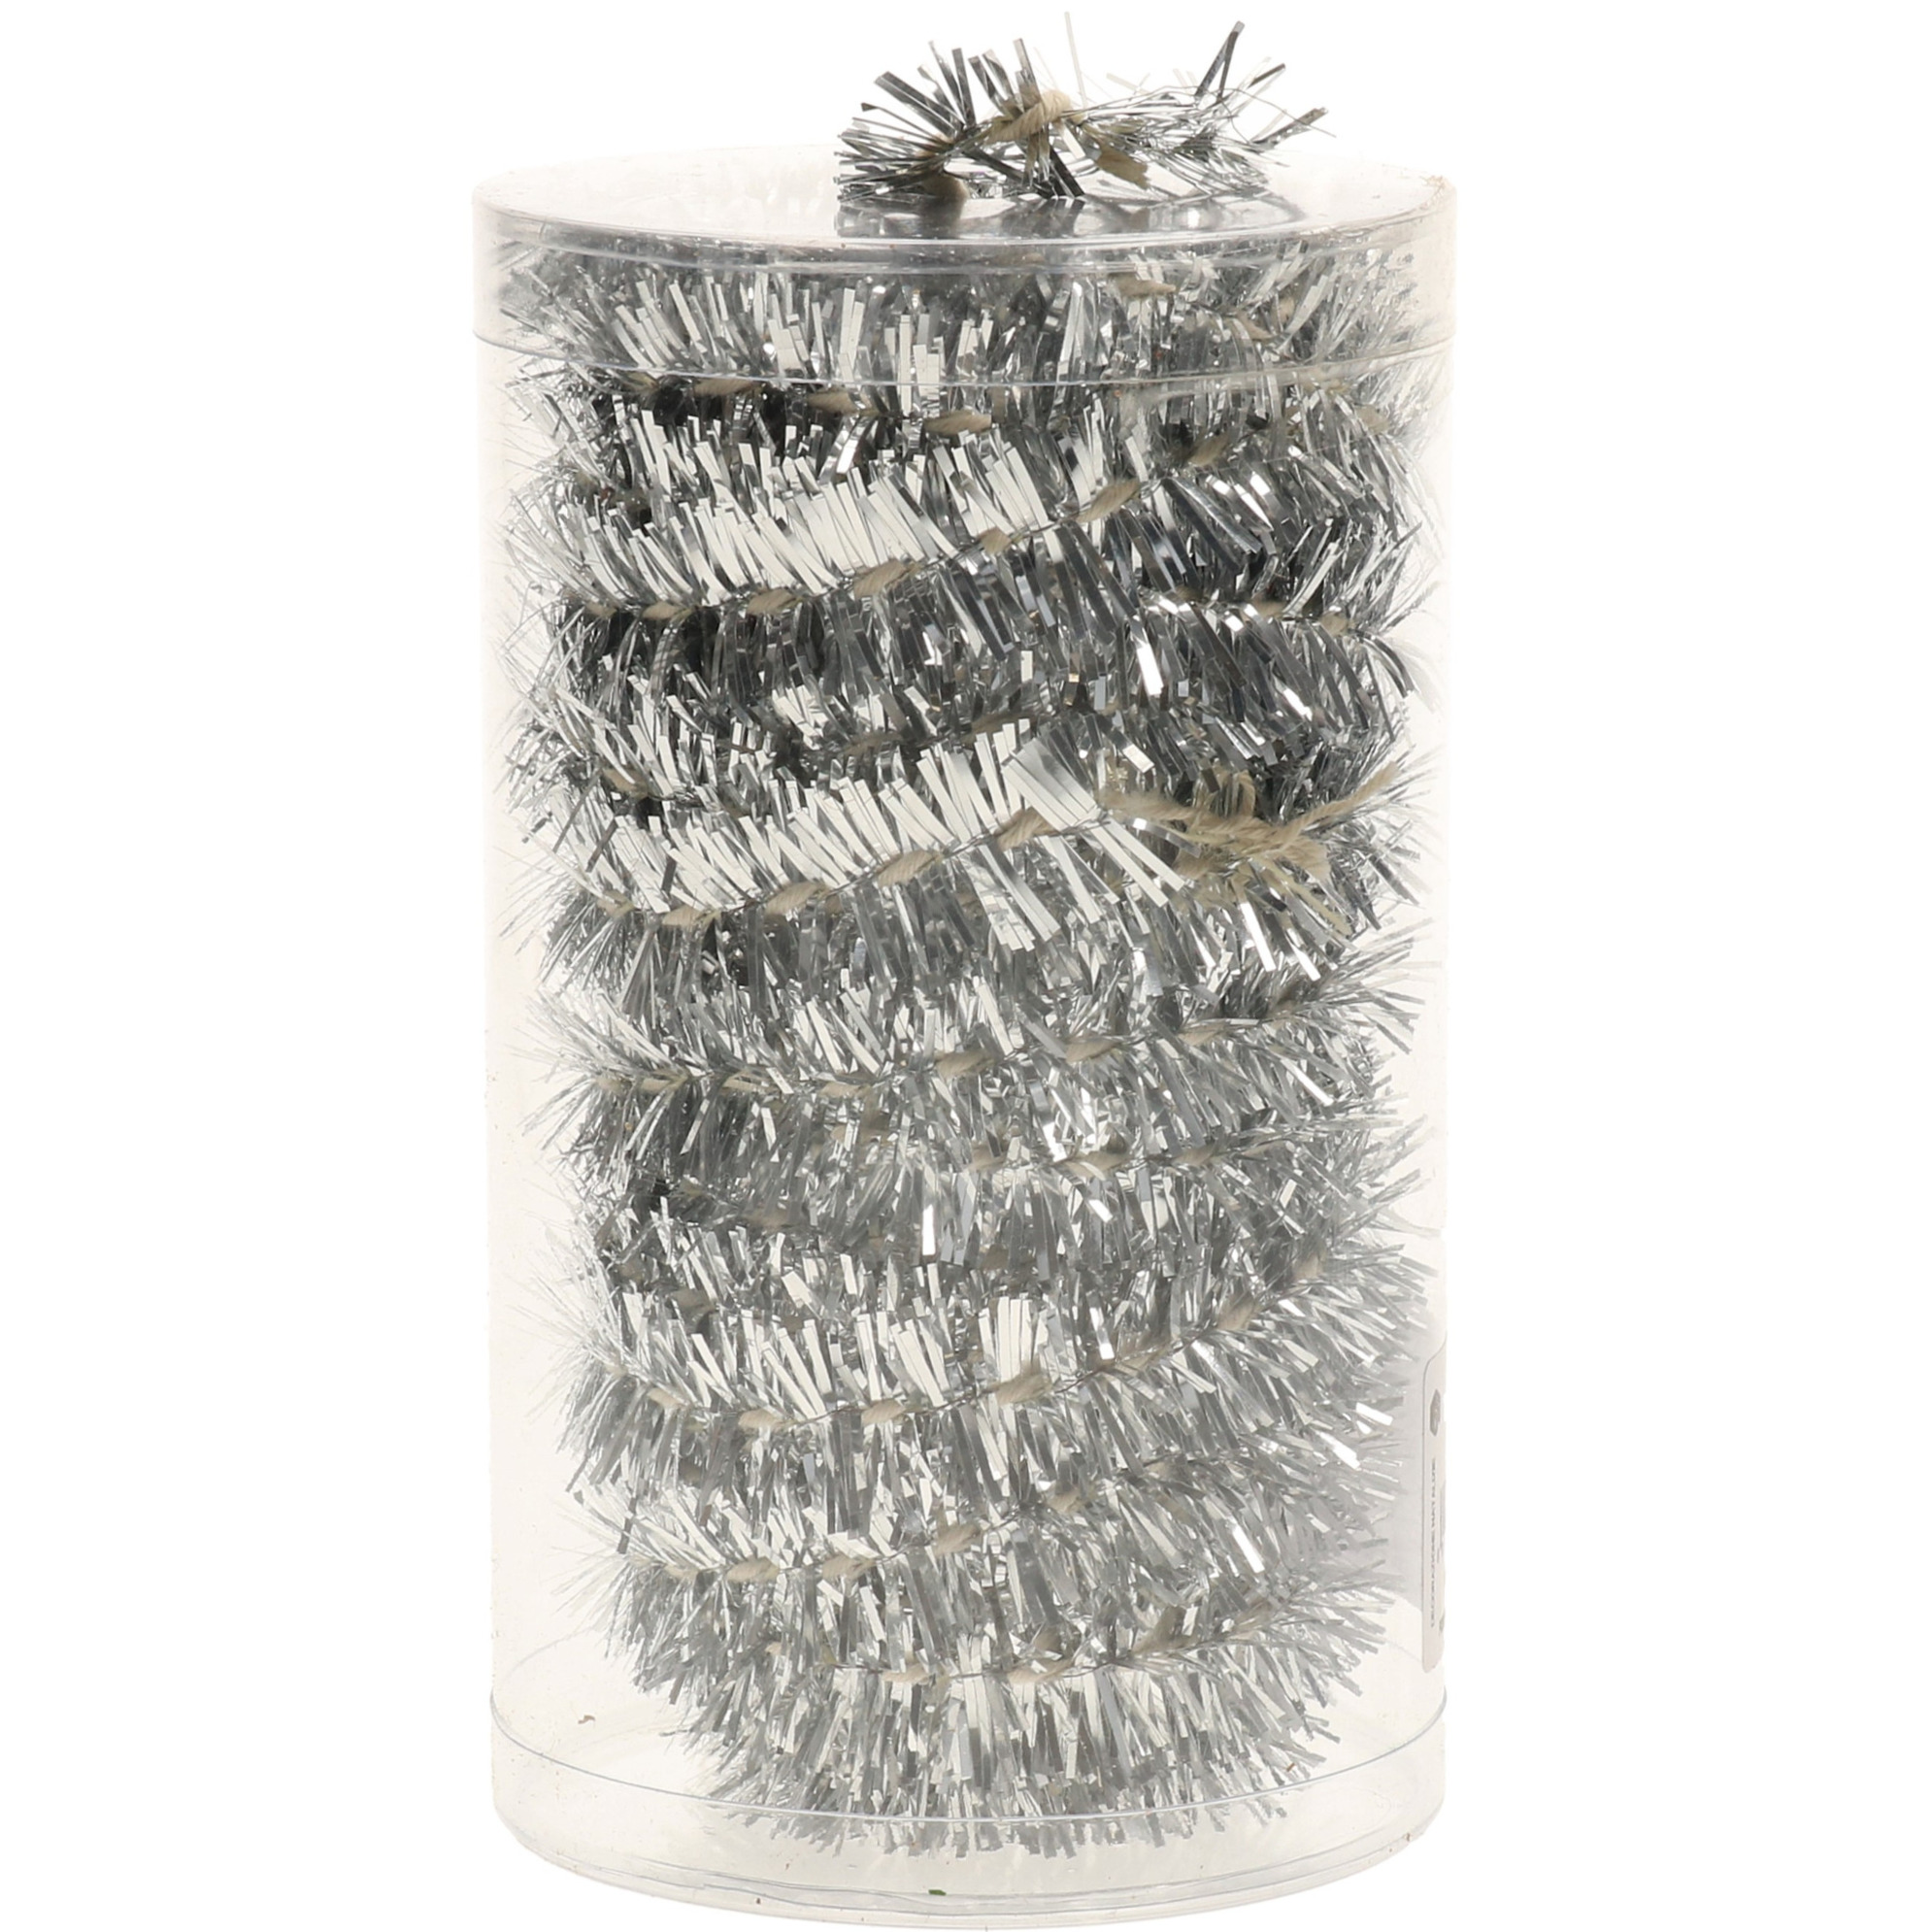 1x stuks folie tinsel slingers-guirlandes zilver 20 meter kerstslingers